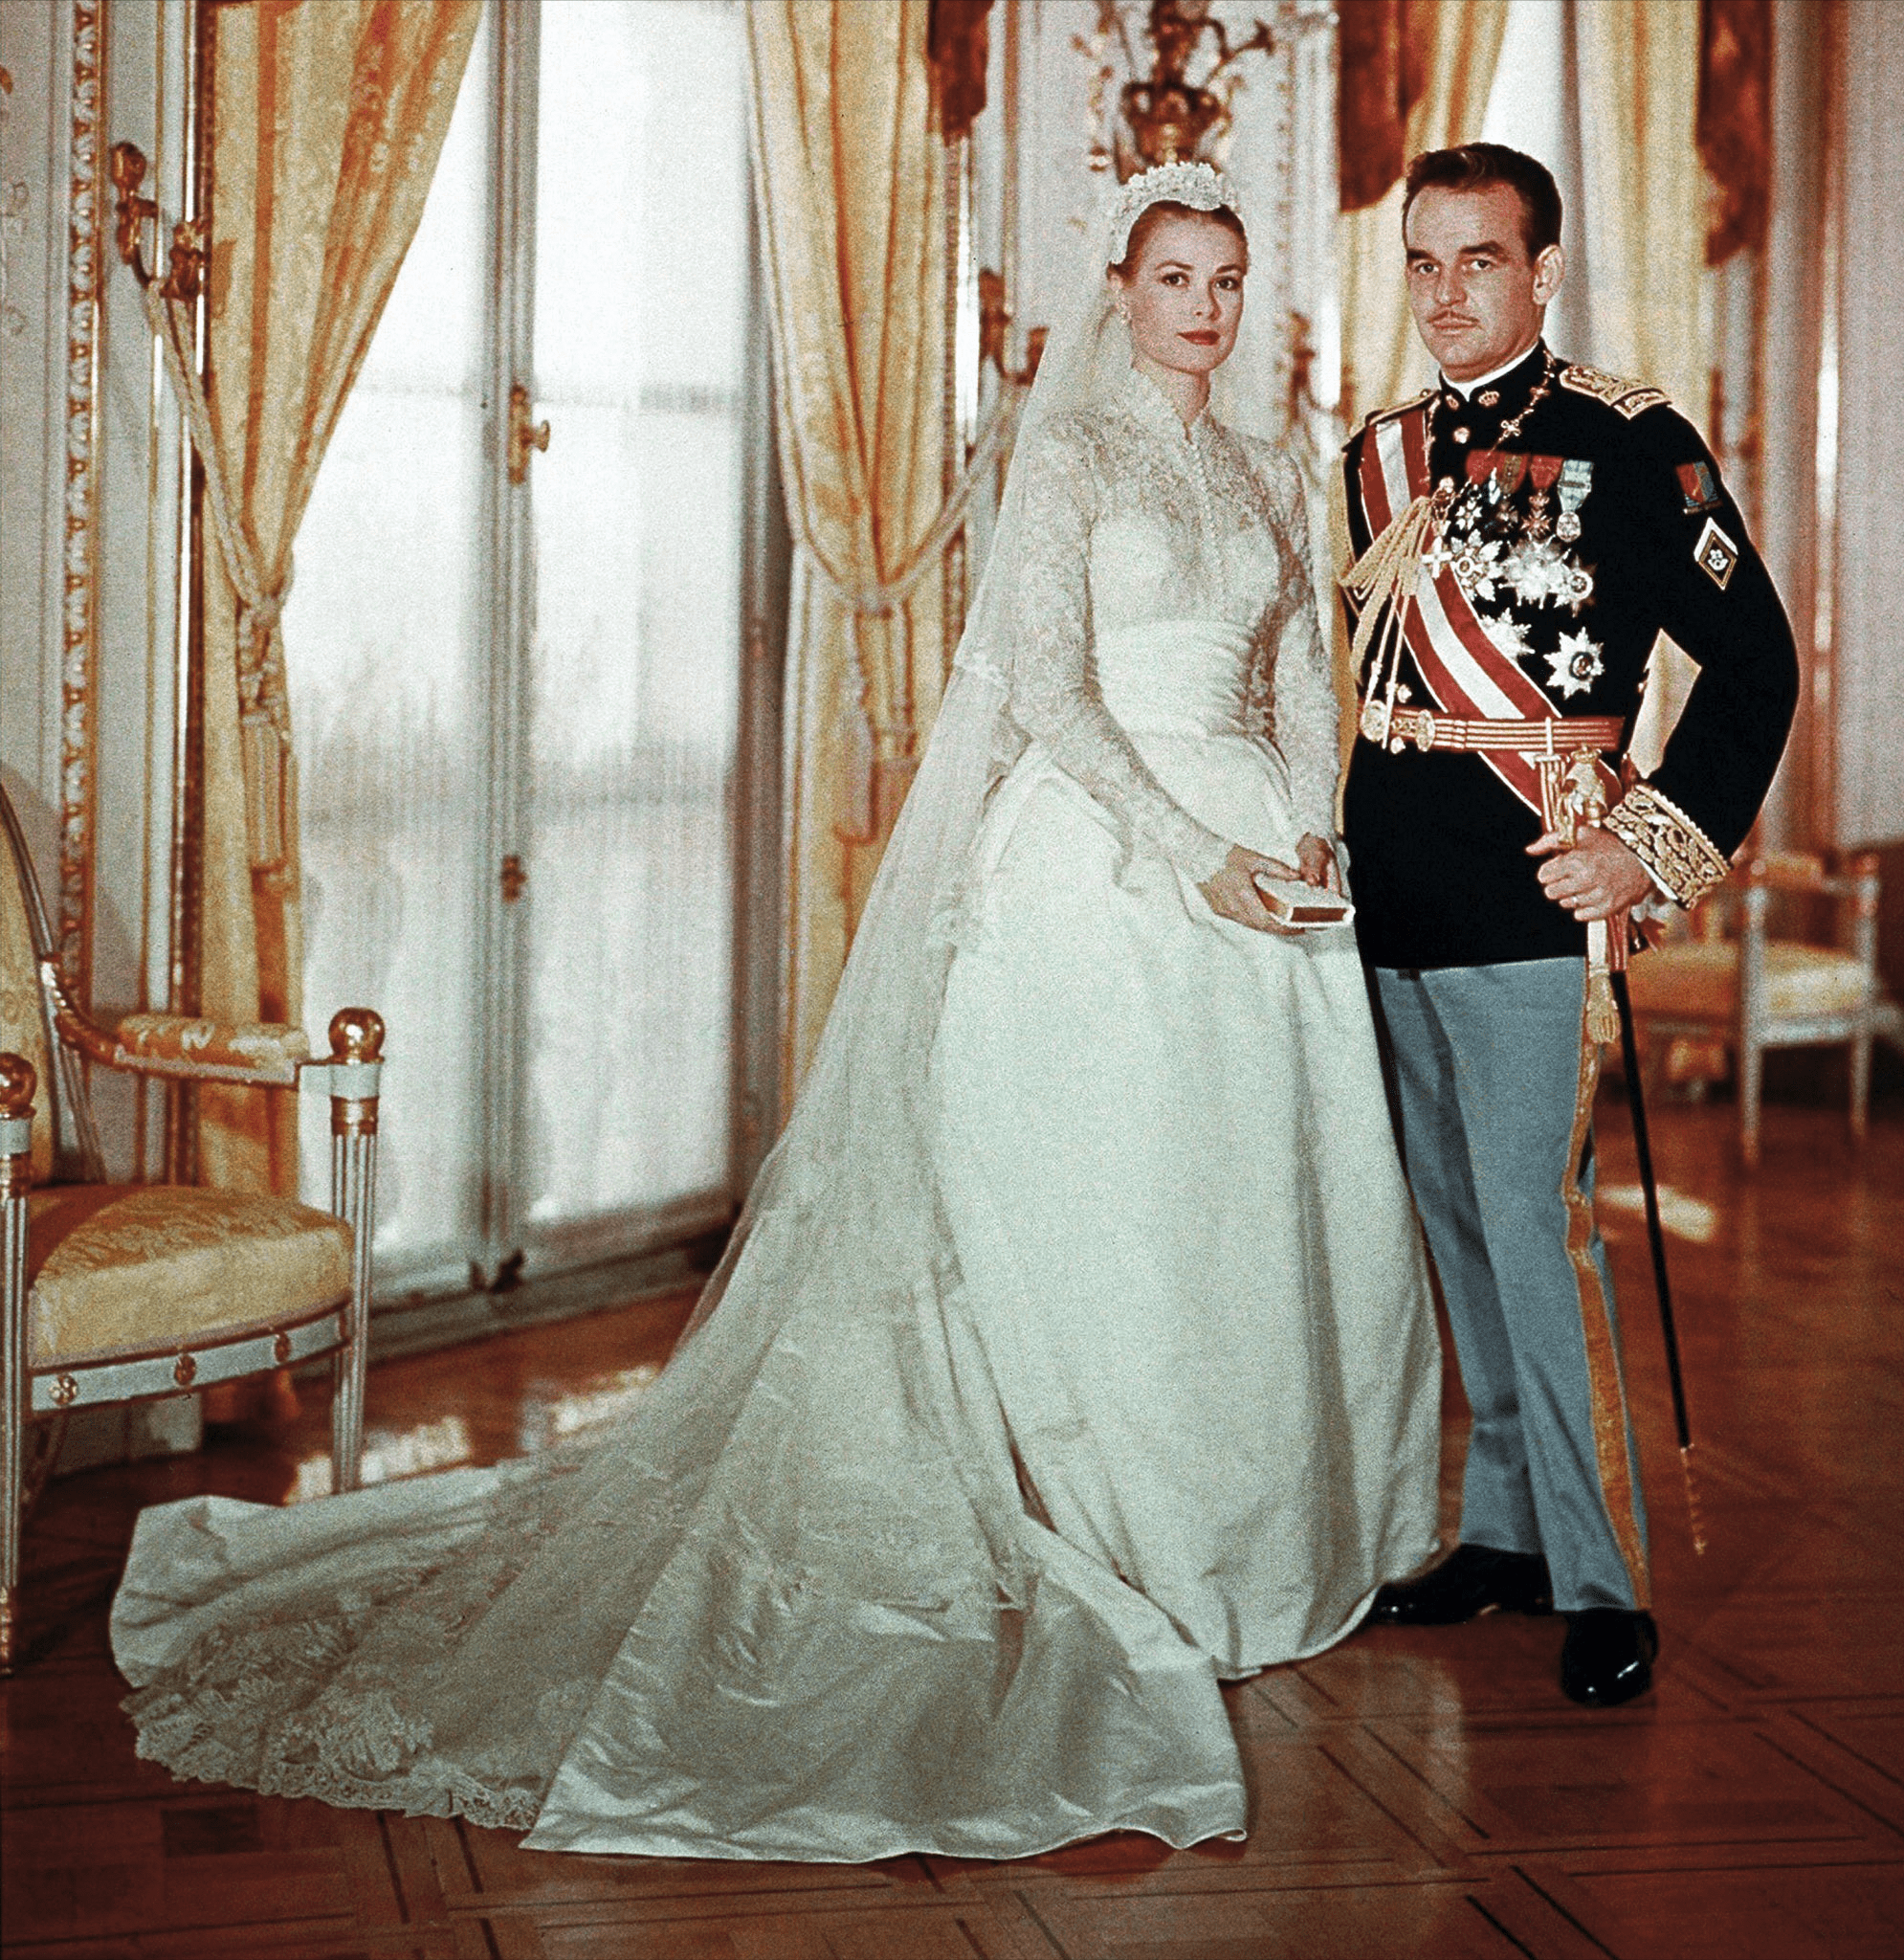 摩纳哥雷尼尔王子和国外女演员格时尚·凯利举行了盛大的婚礼